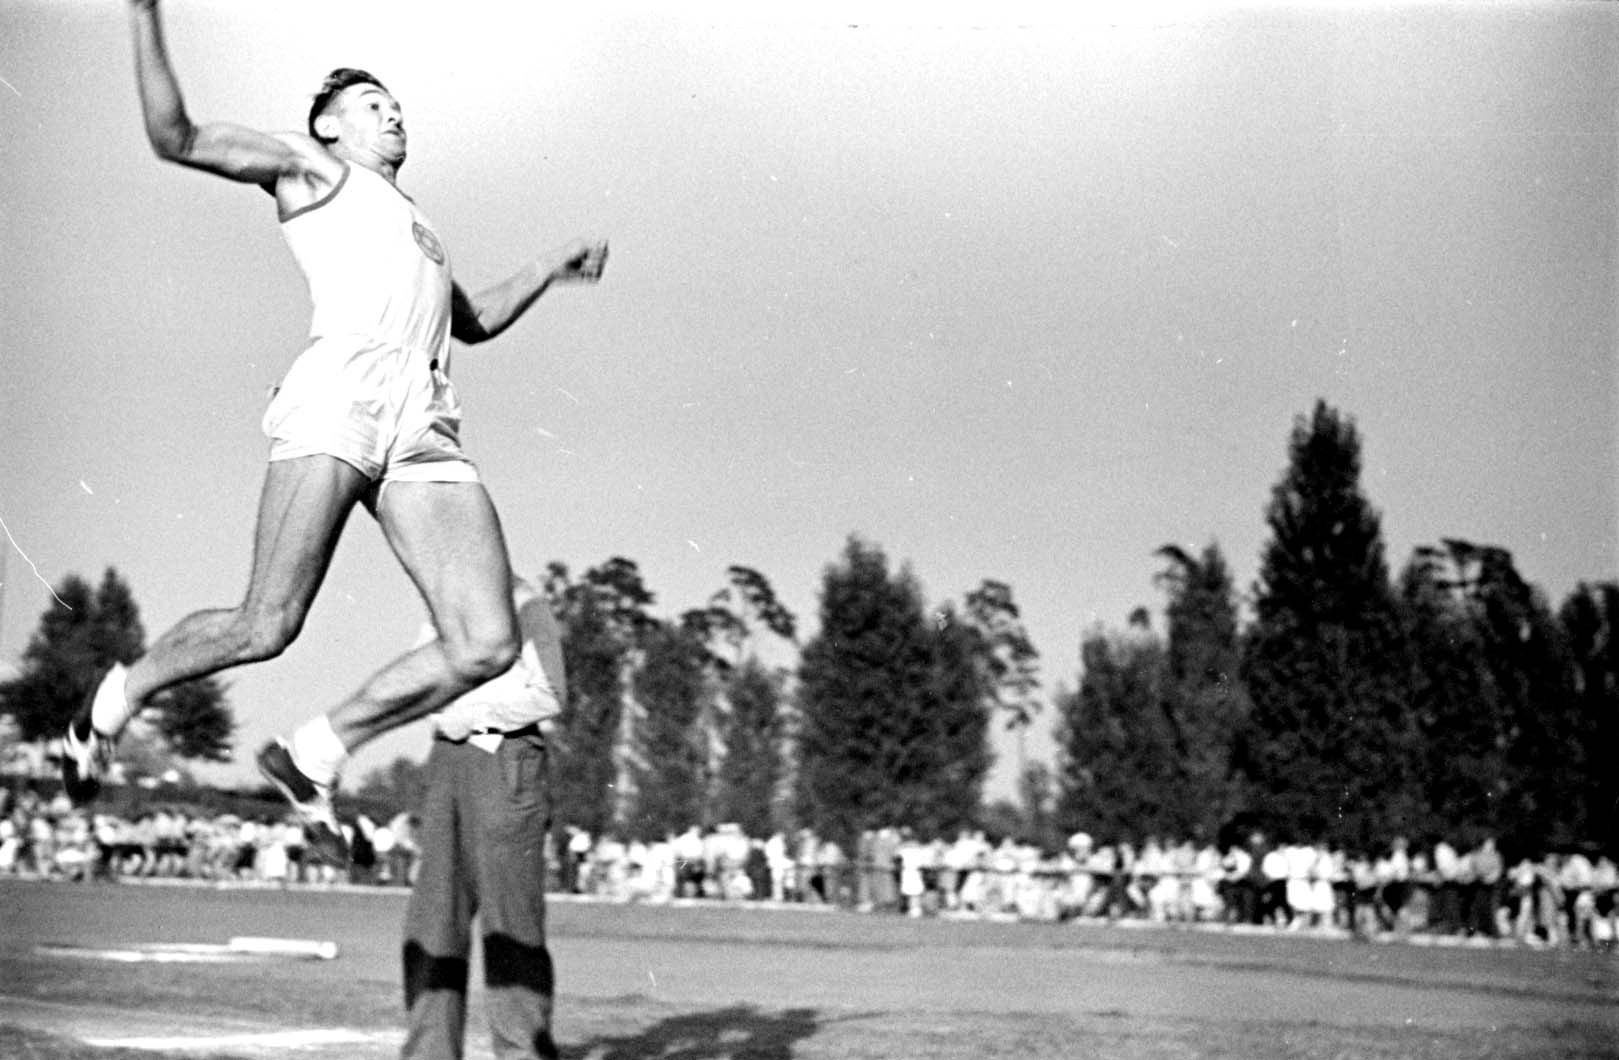 גרמניה, אוגוסט 1937, תחרות קפיצה לרוחק במסגרת תחרויות בענפי ספורט השדה והמסלול